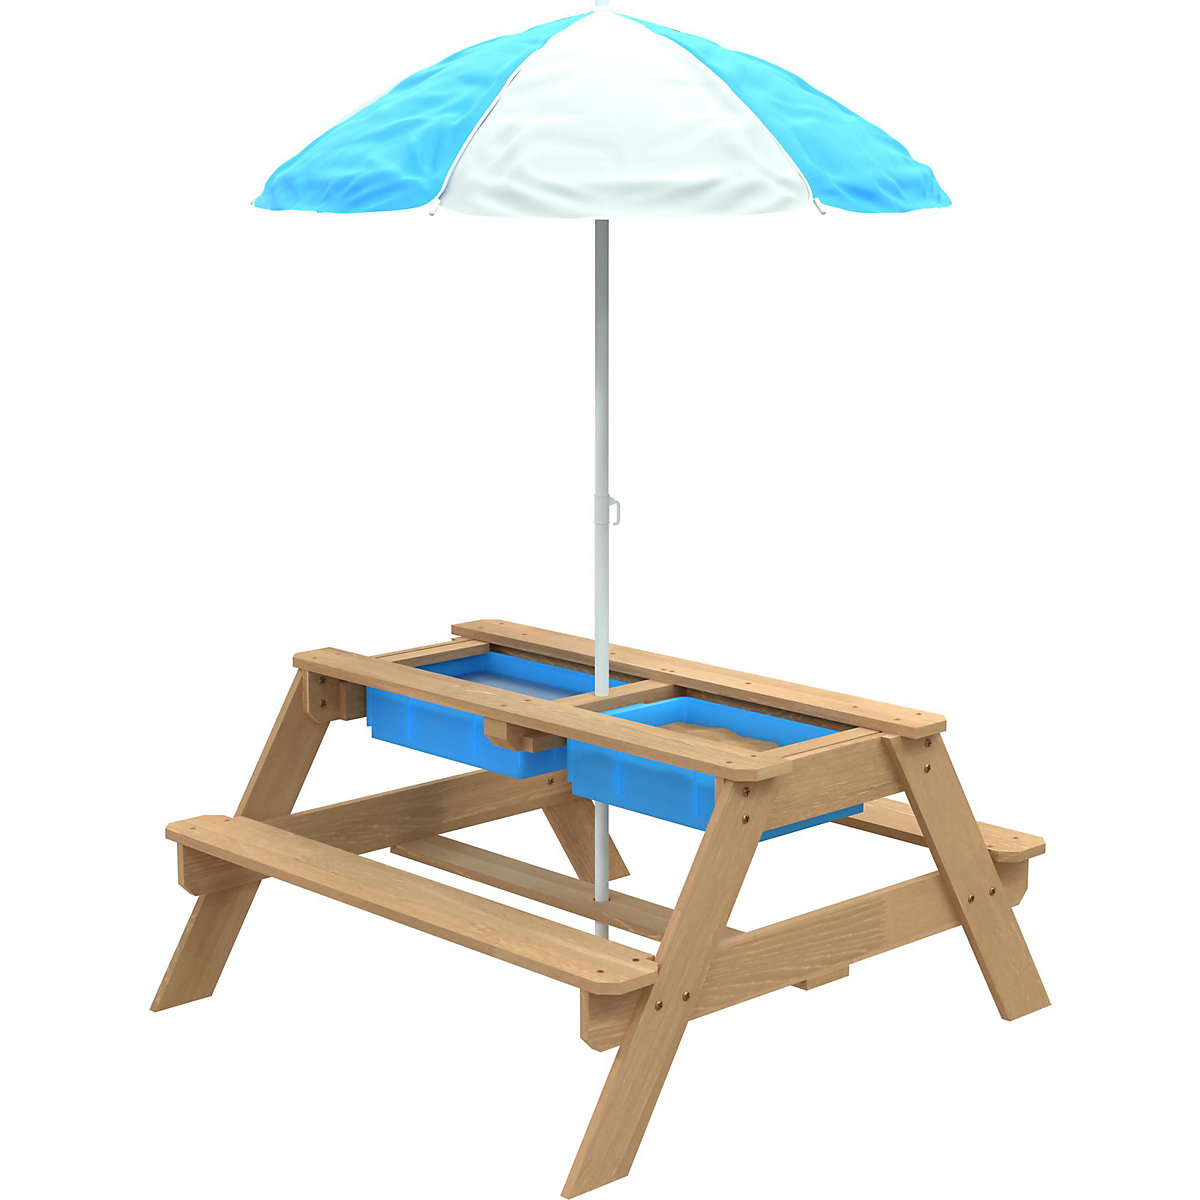 TP Toys Picnic Tisch mit Sonnenschirm